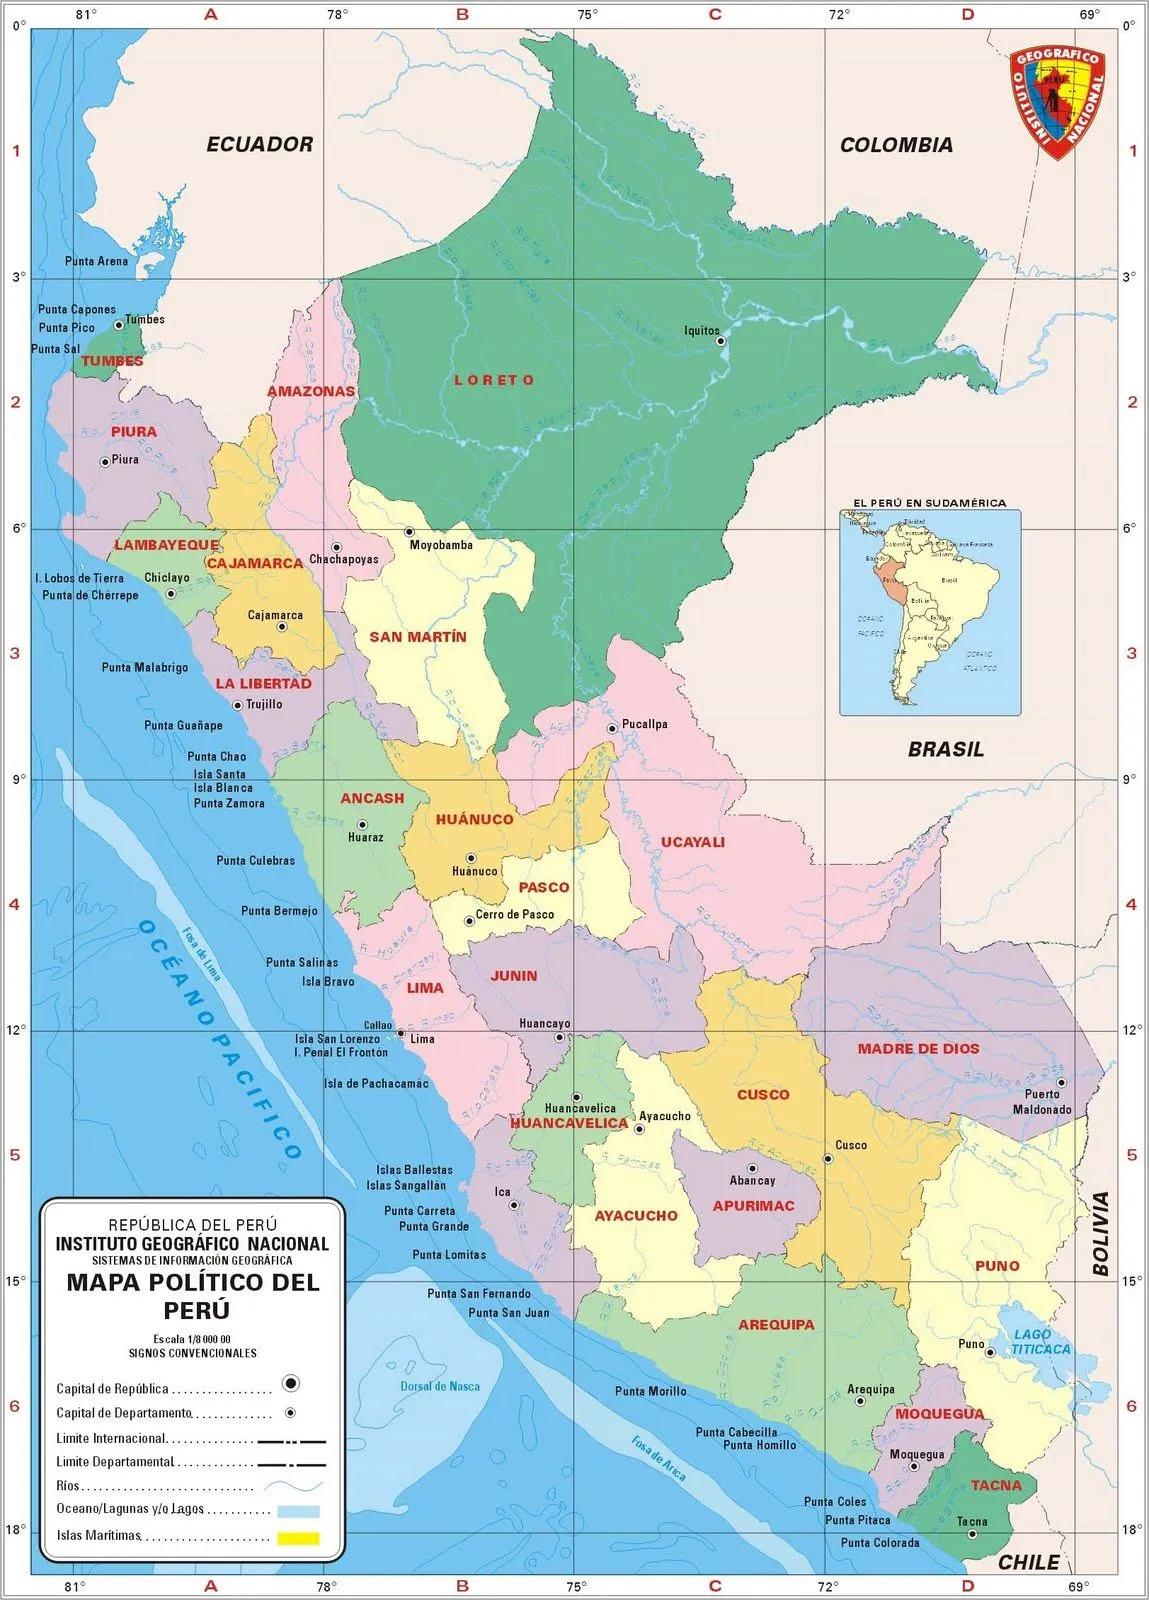 Historia y Geografía: Mapas - América del Sur, Perú y Tacna